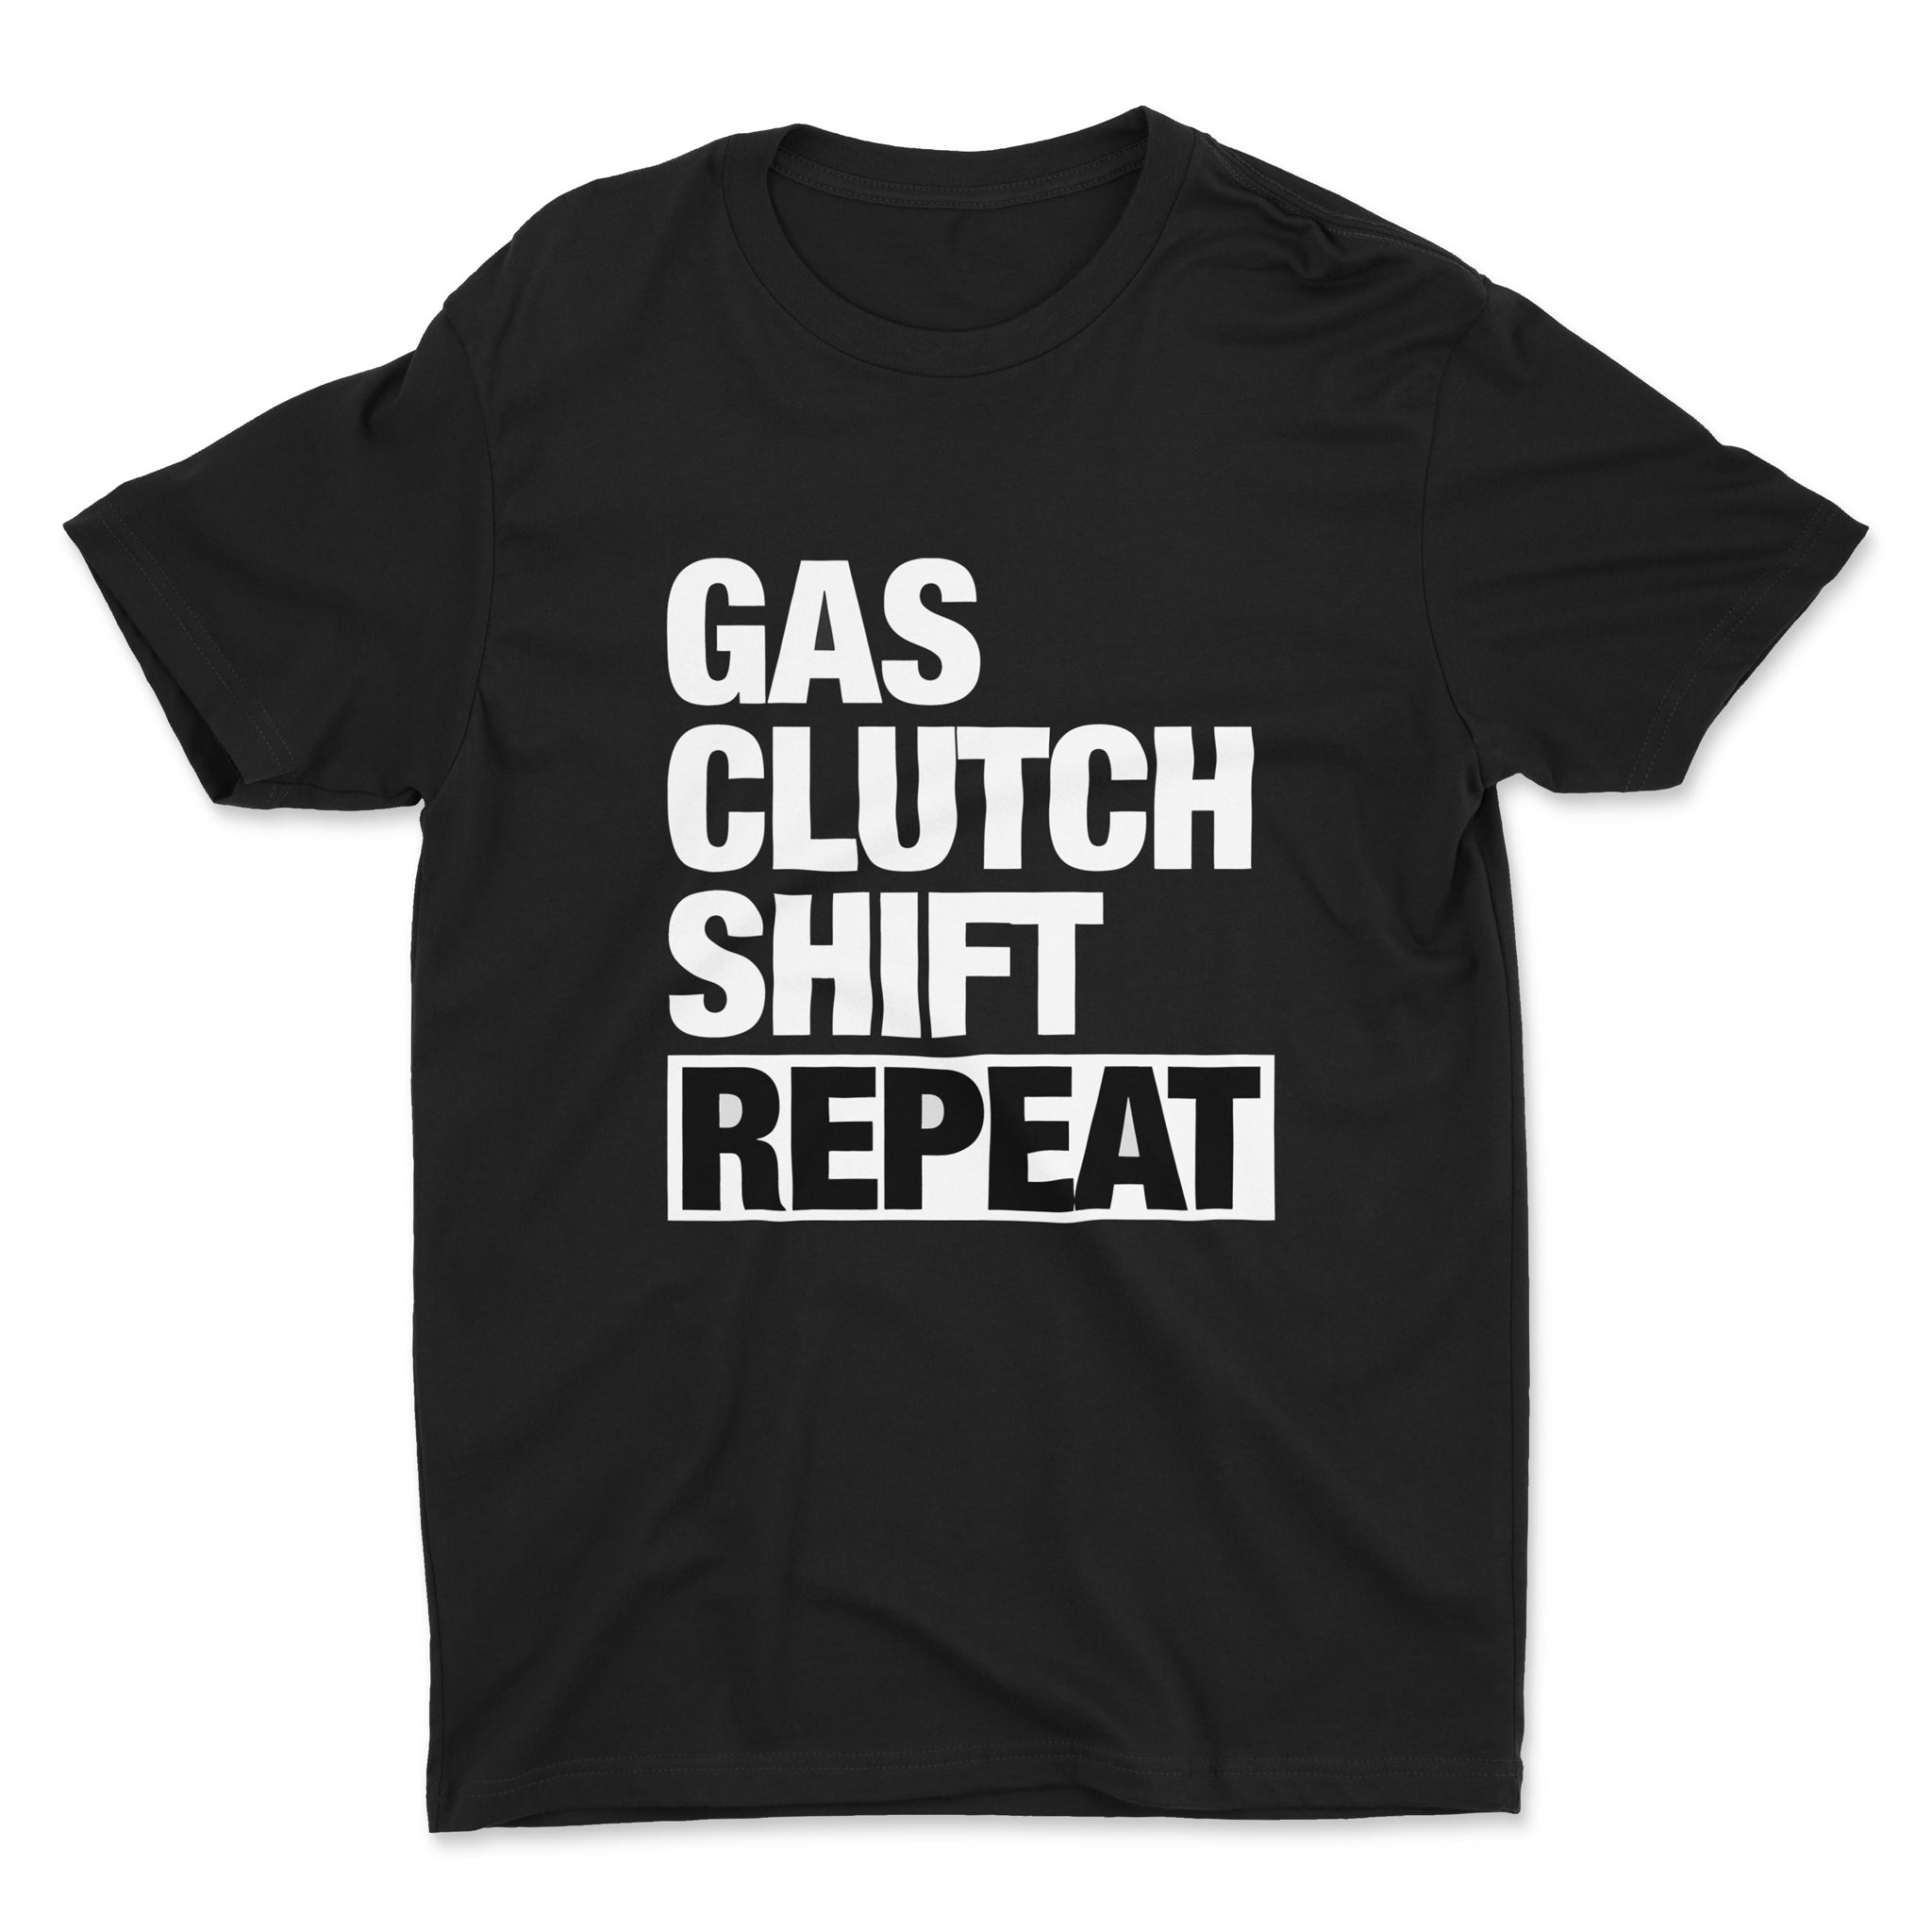 Gas Clutch Shift Repeat - Car T-Shirt - Black Mockup